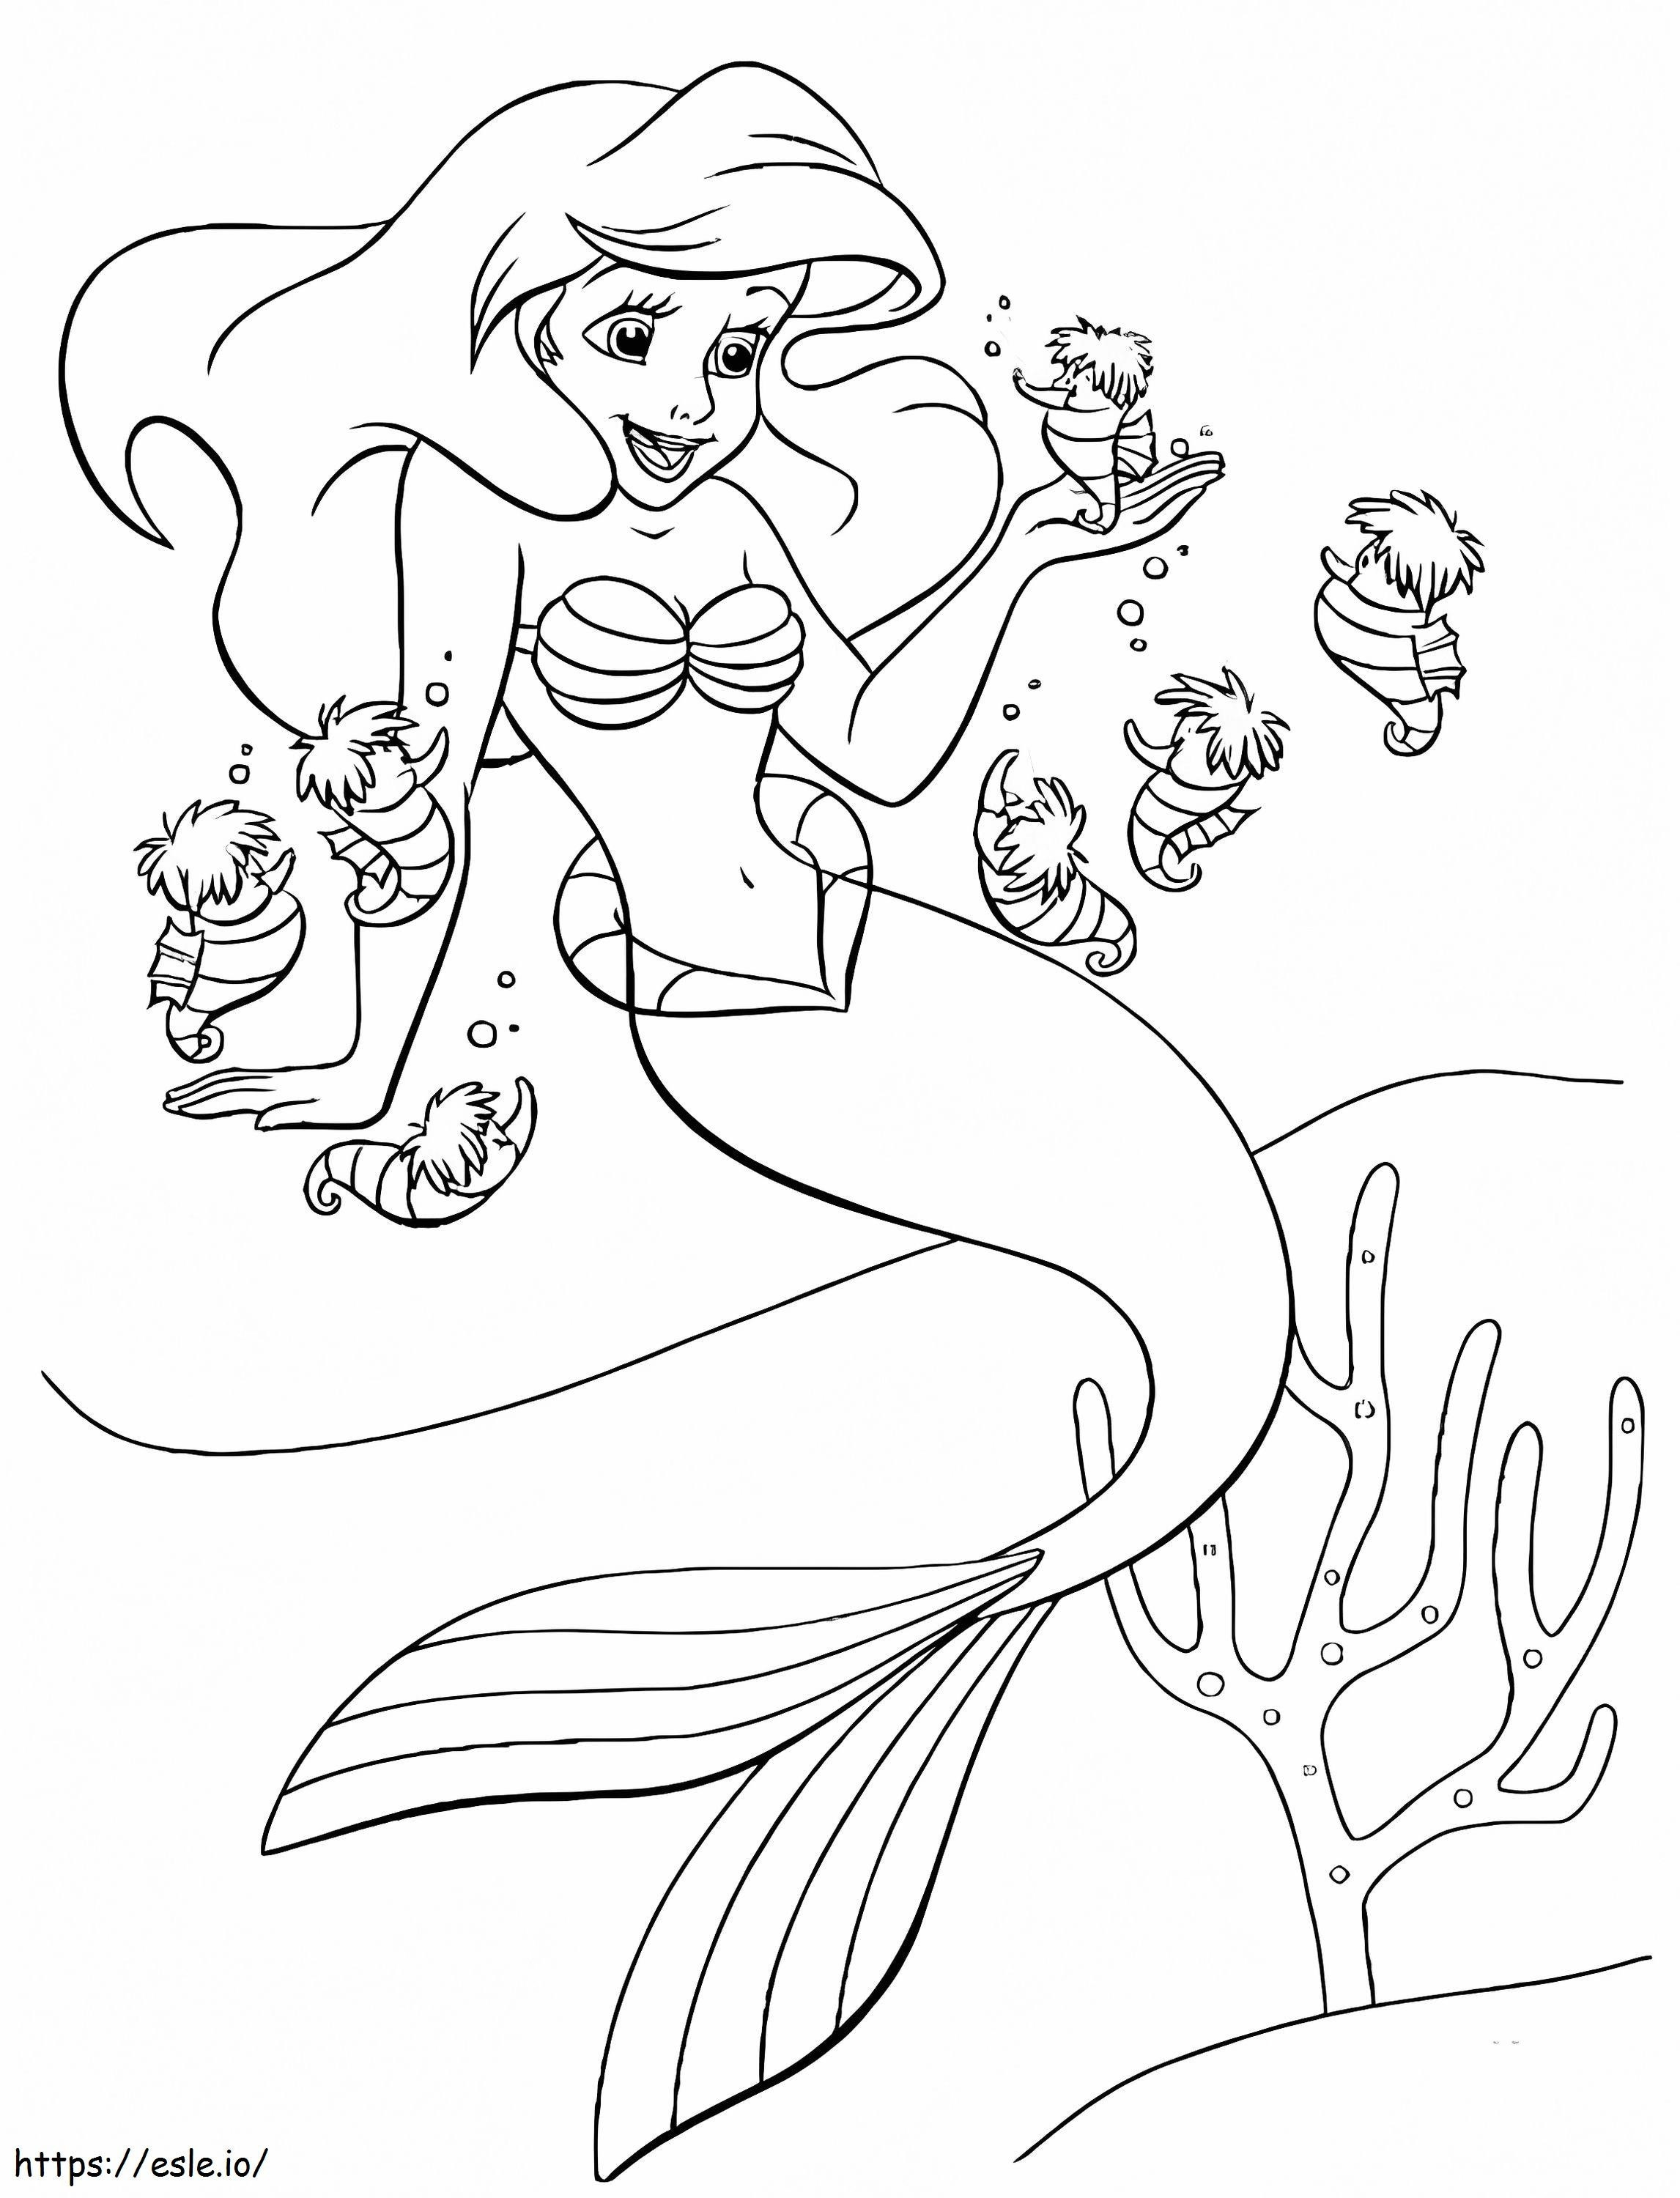  Ariel e cavallucci marini da colorare